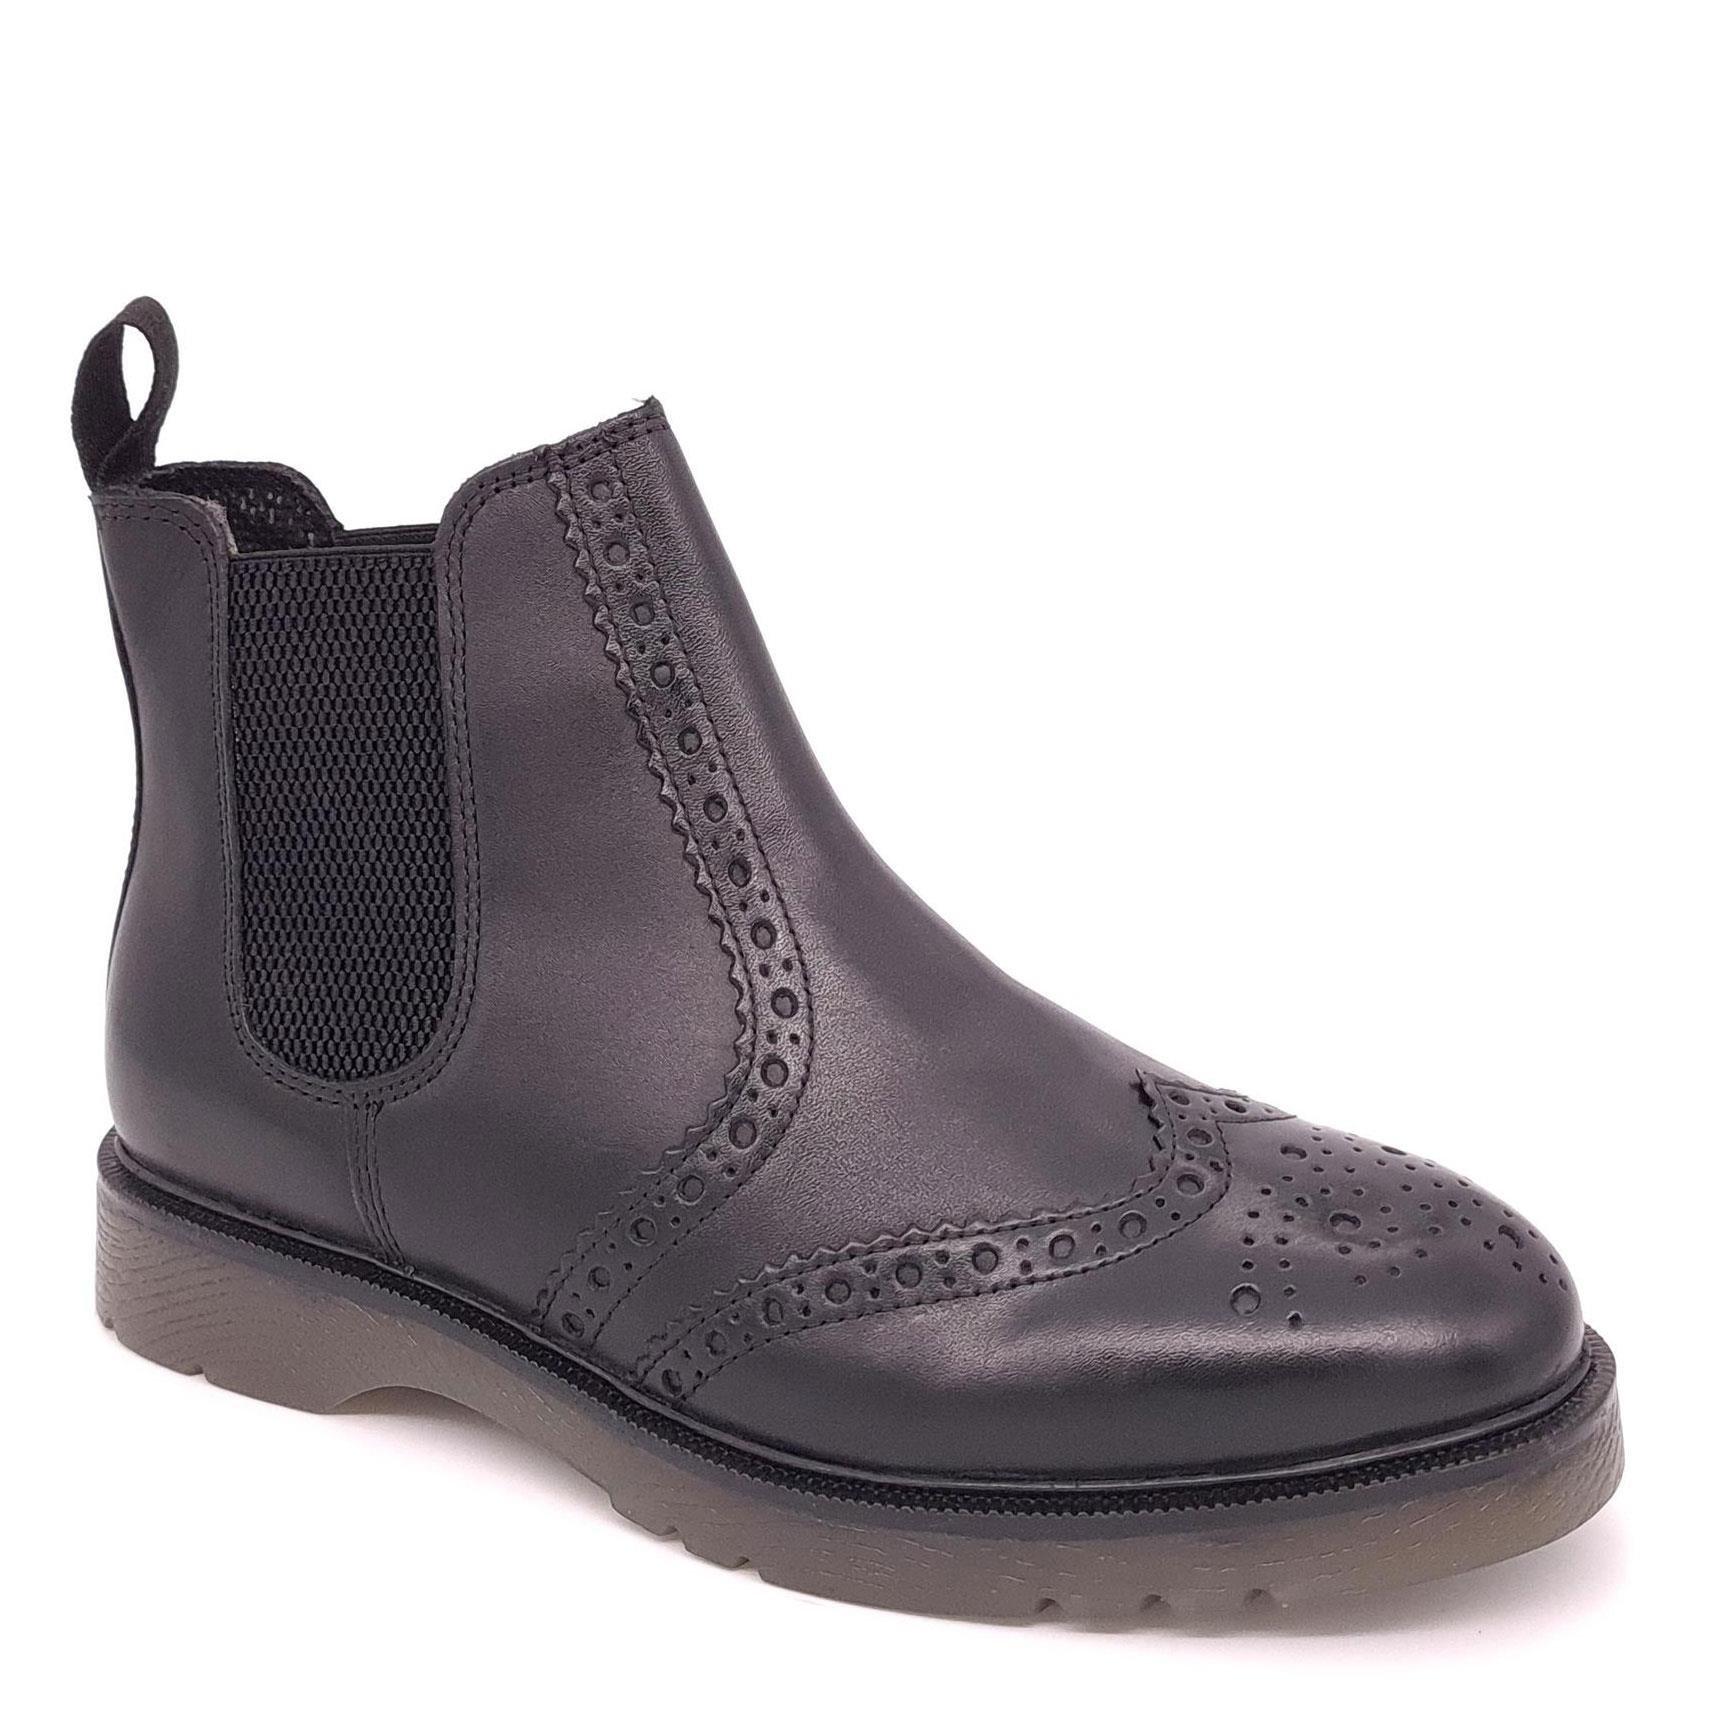 Кожаные ботинки челси с эффектом броги Warkton Frank James, черный кожаные броги norbury frank james коричневый